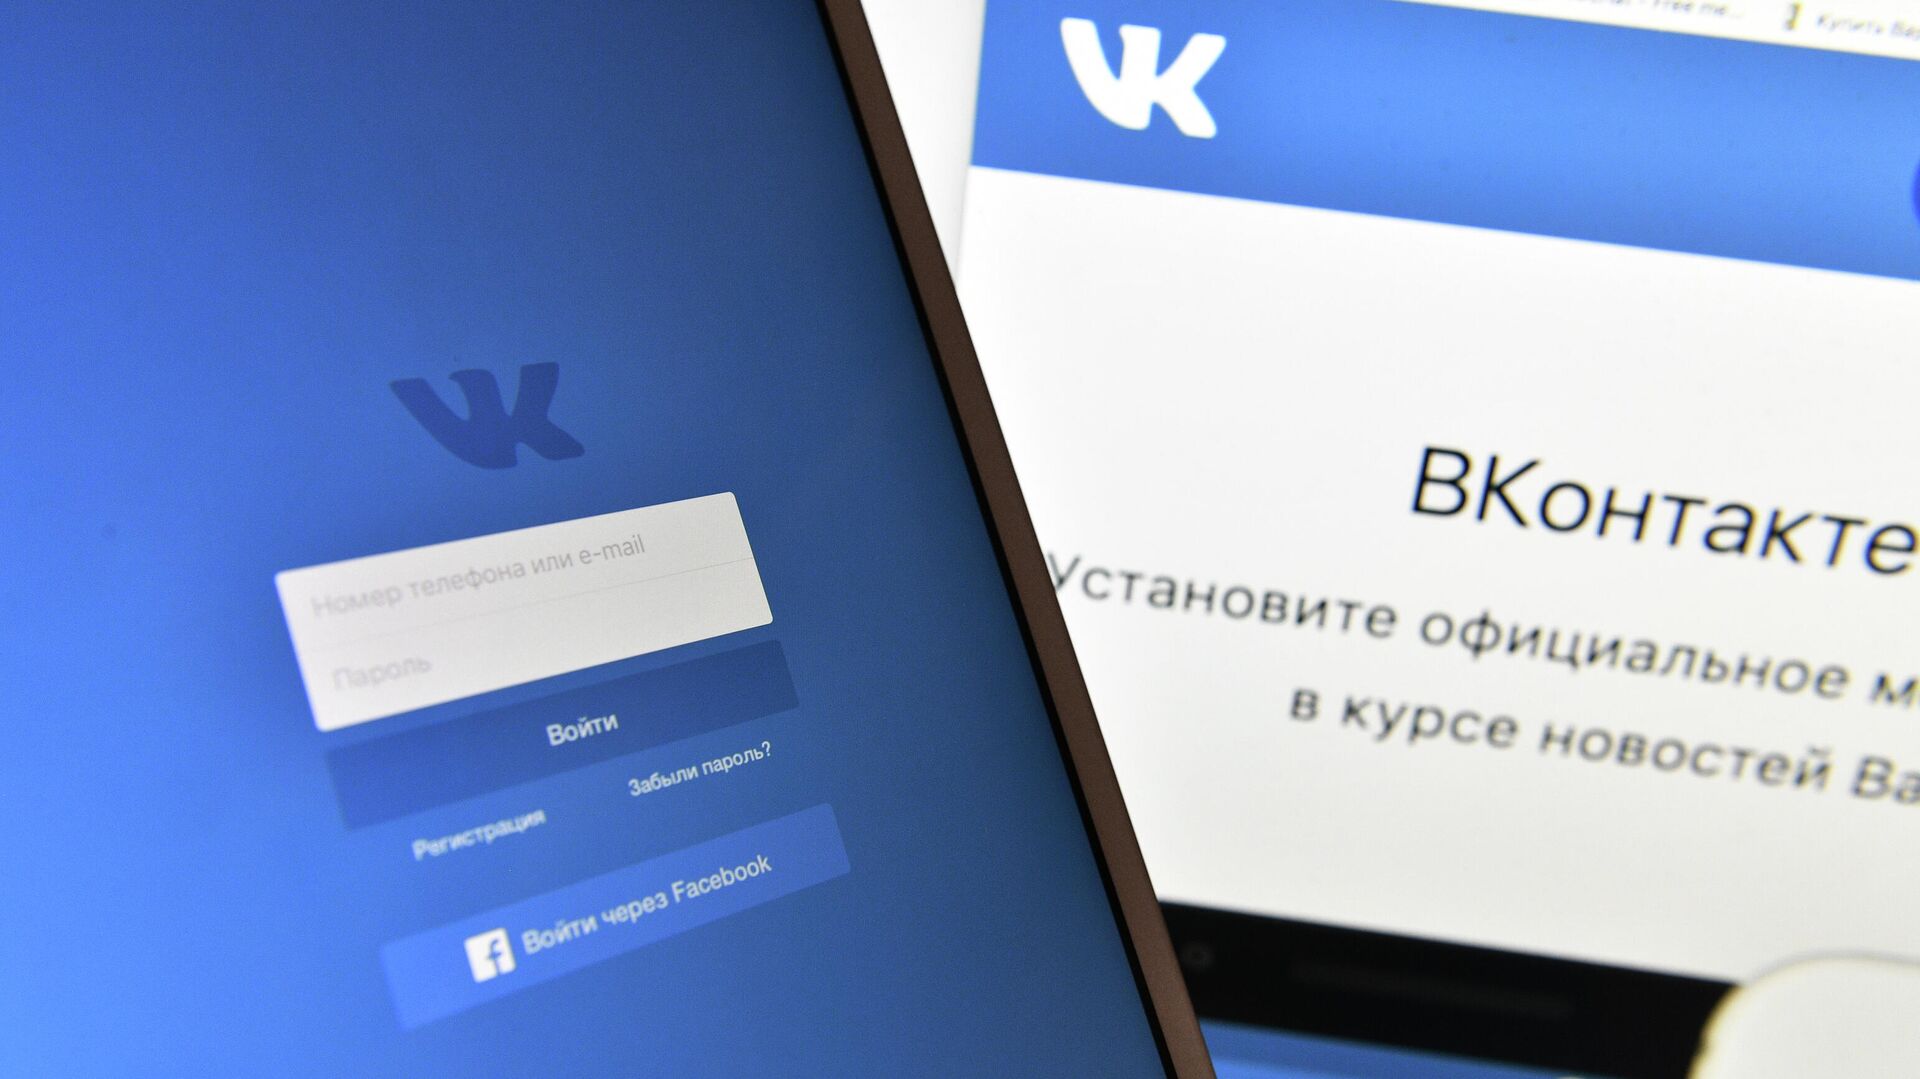 Страница социальной сети Вконтакте на экранах смартфона и компьютера - Sputnik Абхазия, 1920, 10.03.2022